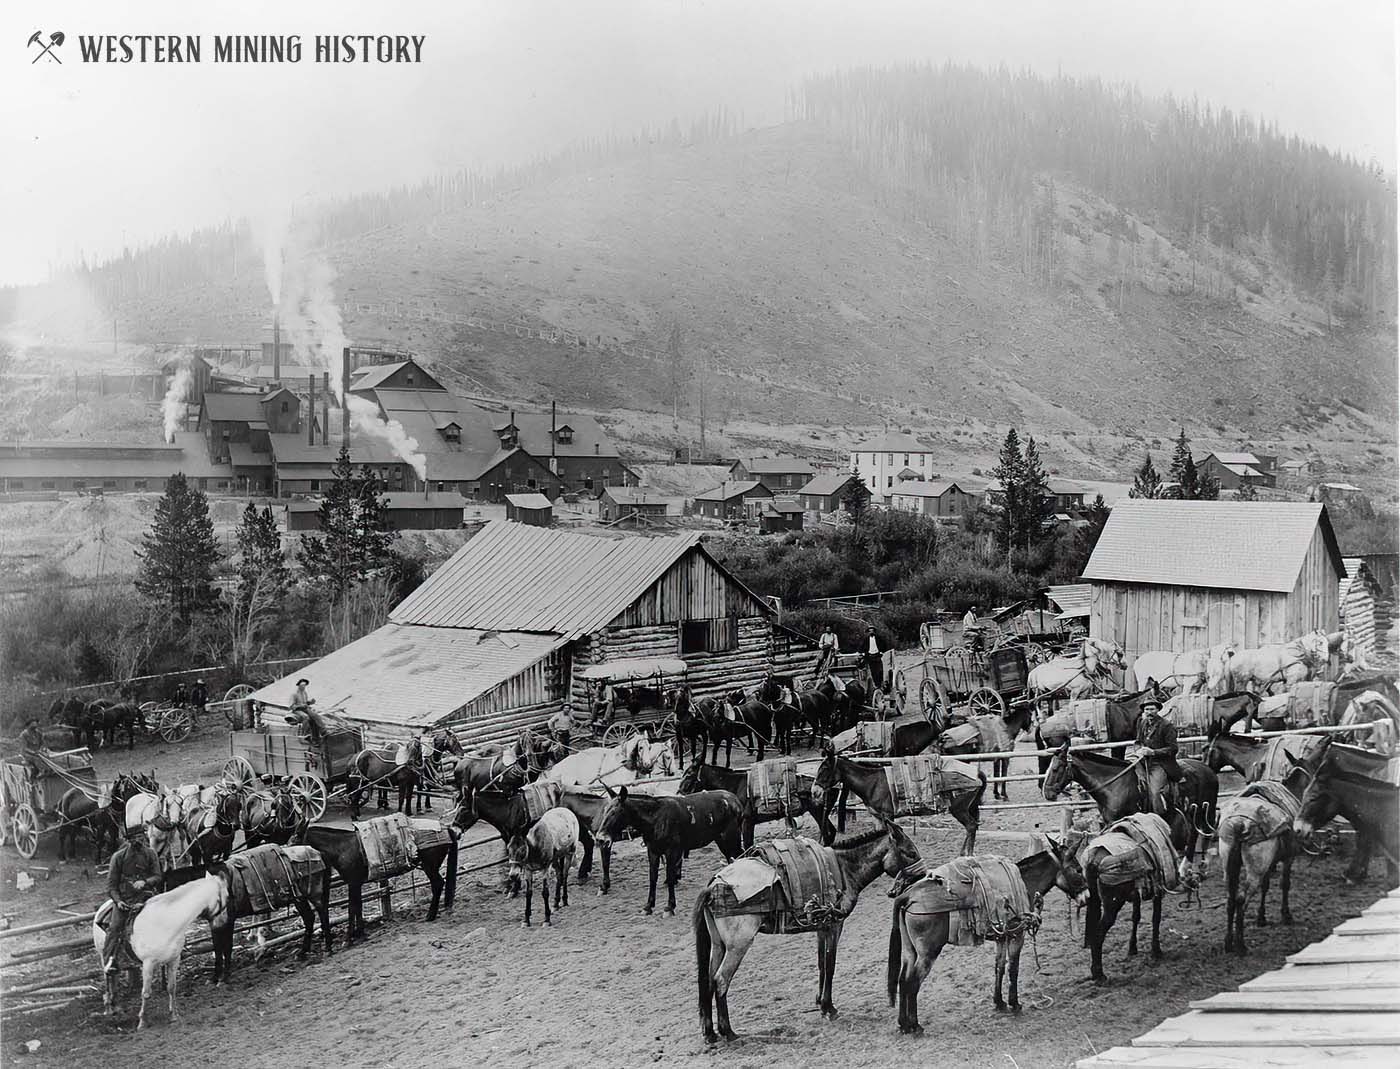 Freight teams at Pony, Montana ca. 1900